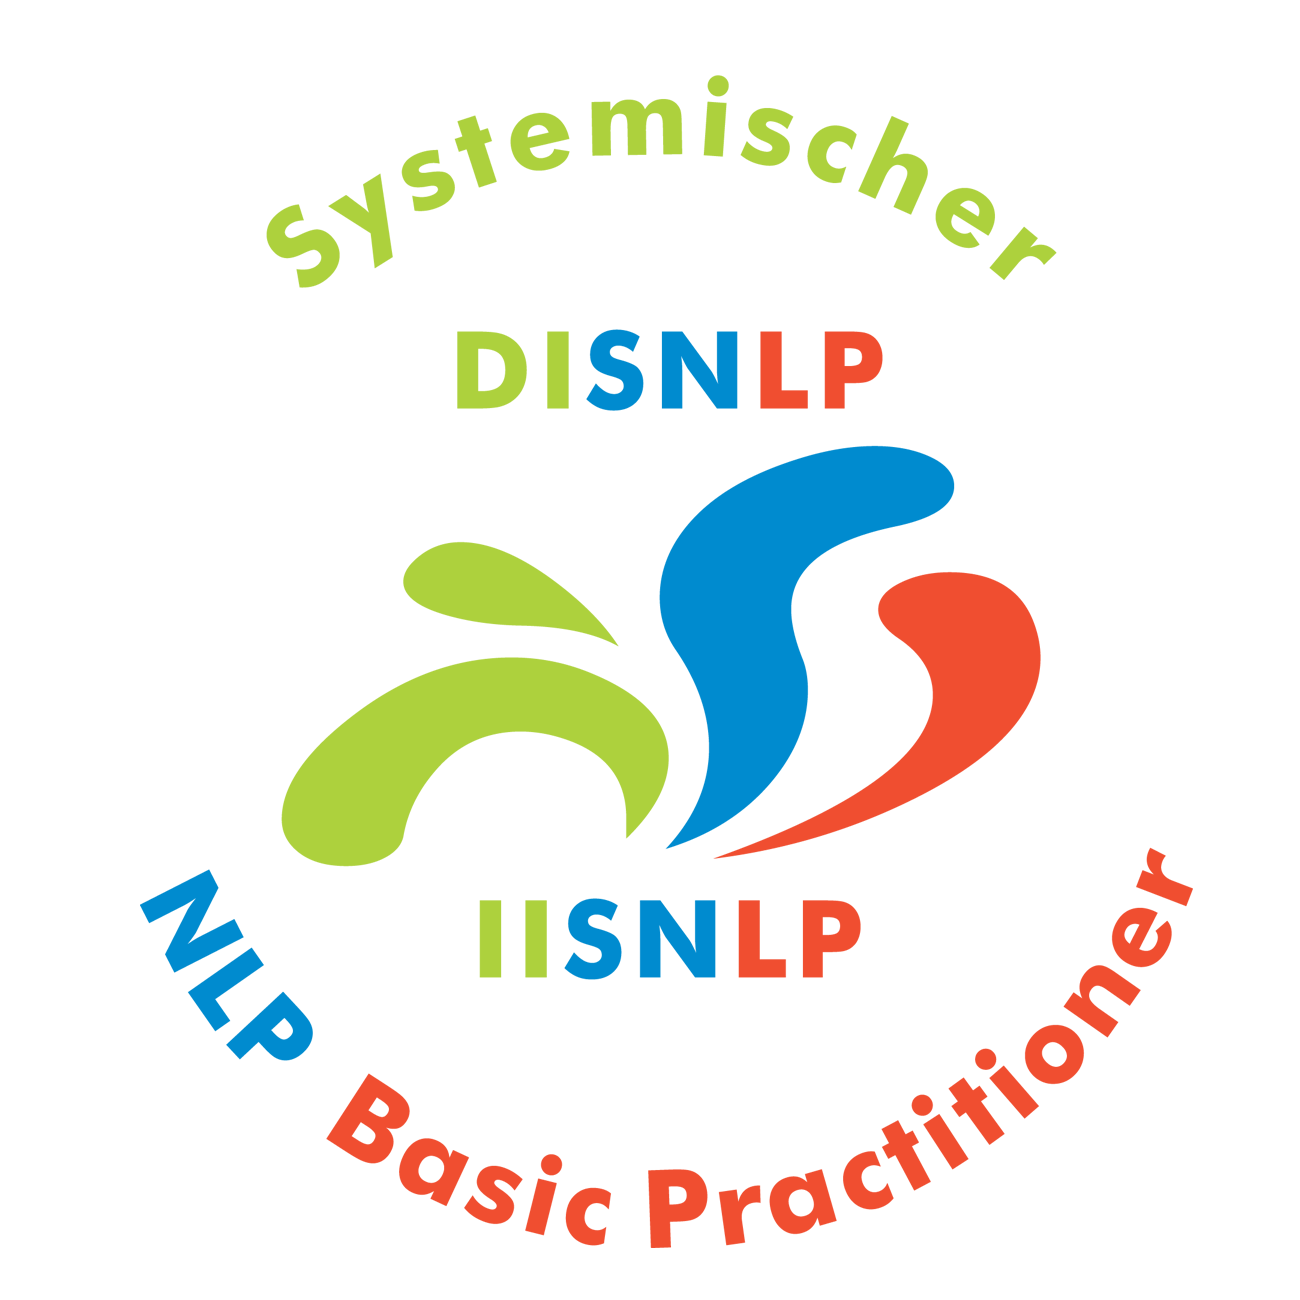 Seminar Selbstbewusstsein, Selbstvertrauen, Selbstwert, Selbstsicherheit stärken Rhein Main mit NLP Coaching Kurs für mehr Selbstbewusstsein